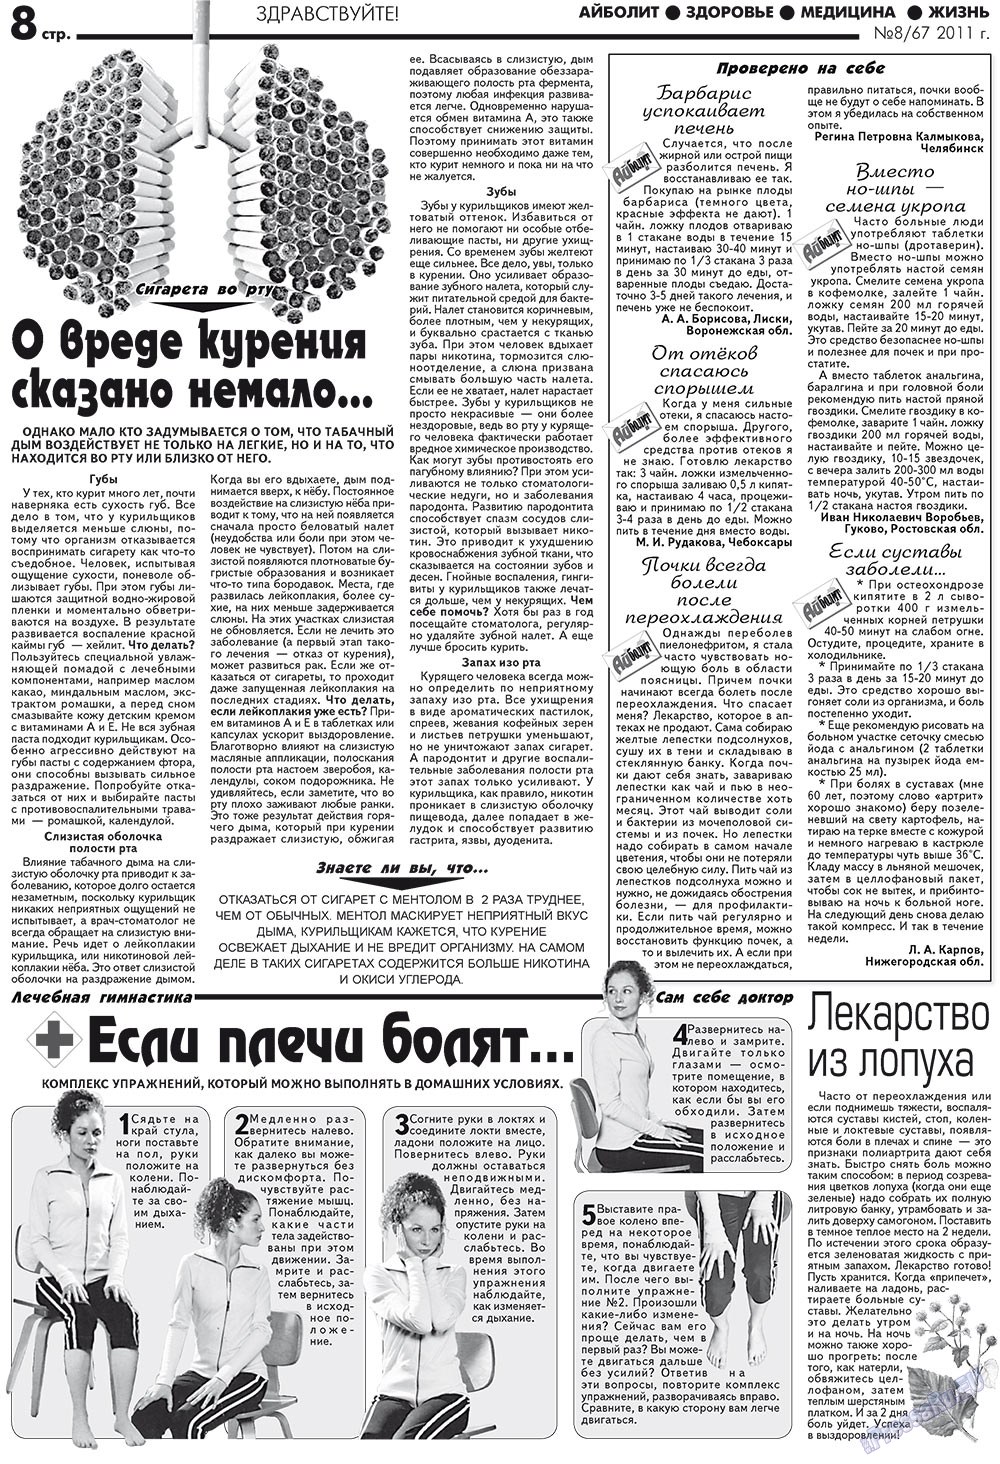 АйБолит, газета. 2011 №8 стр.8